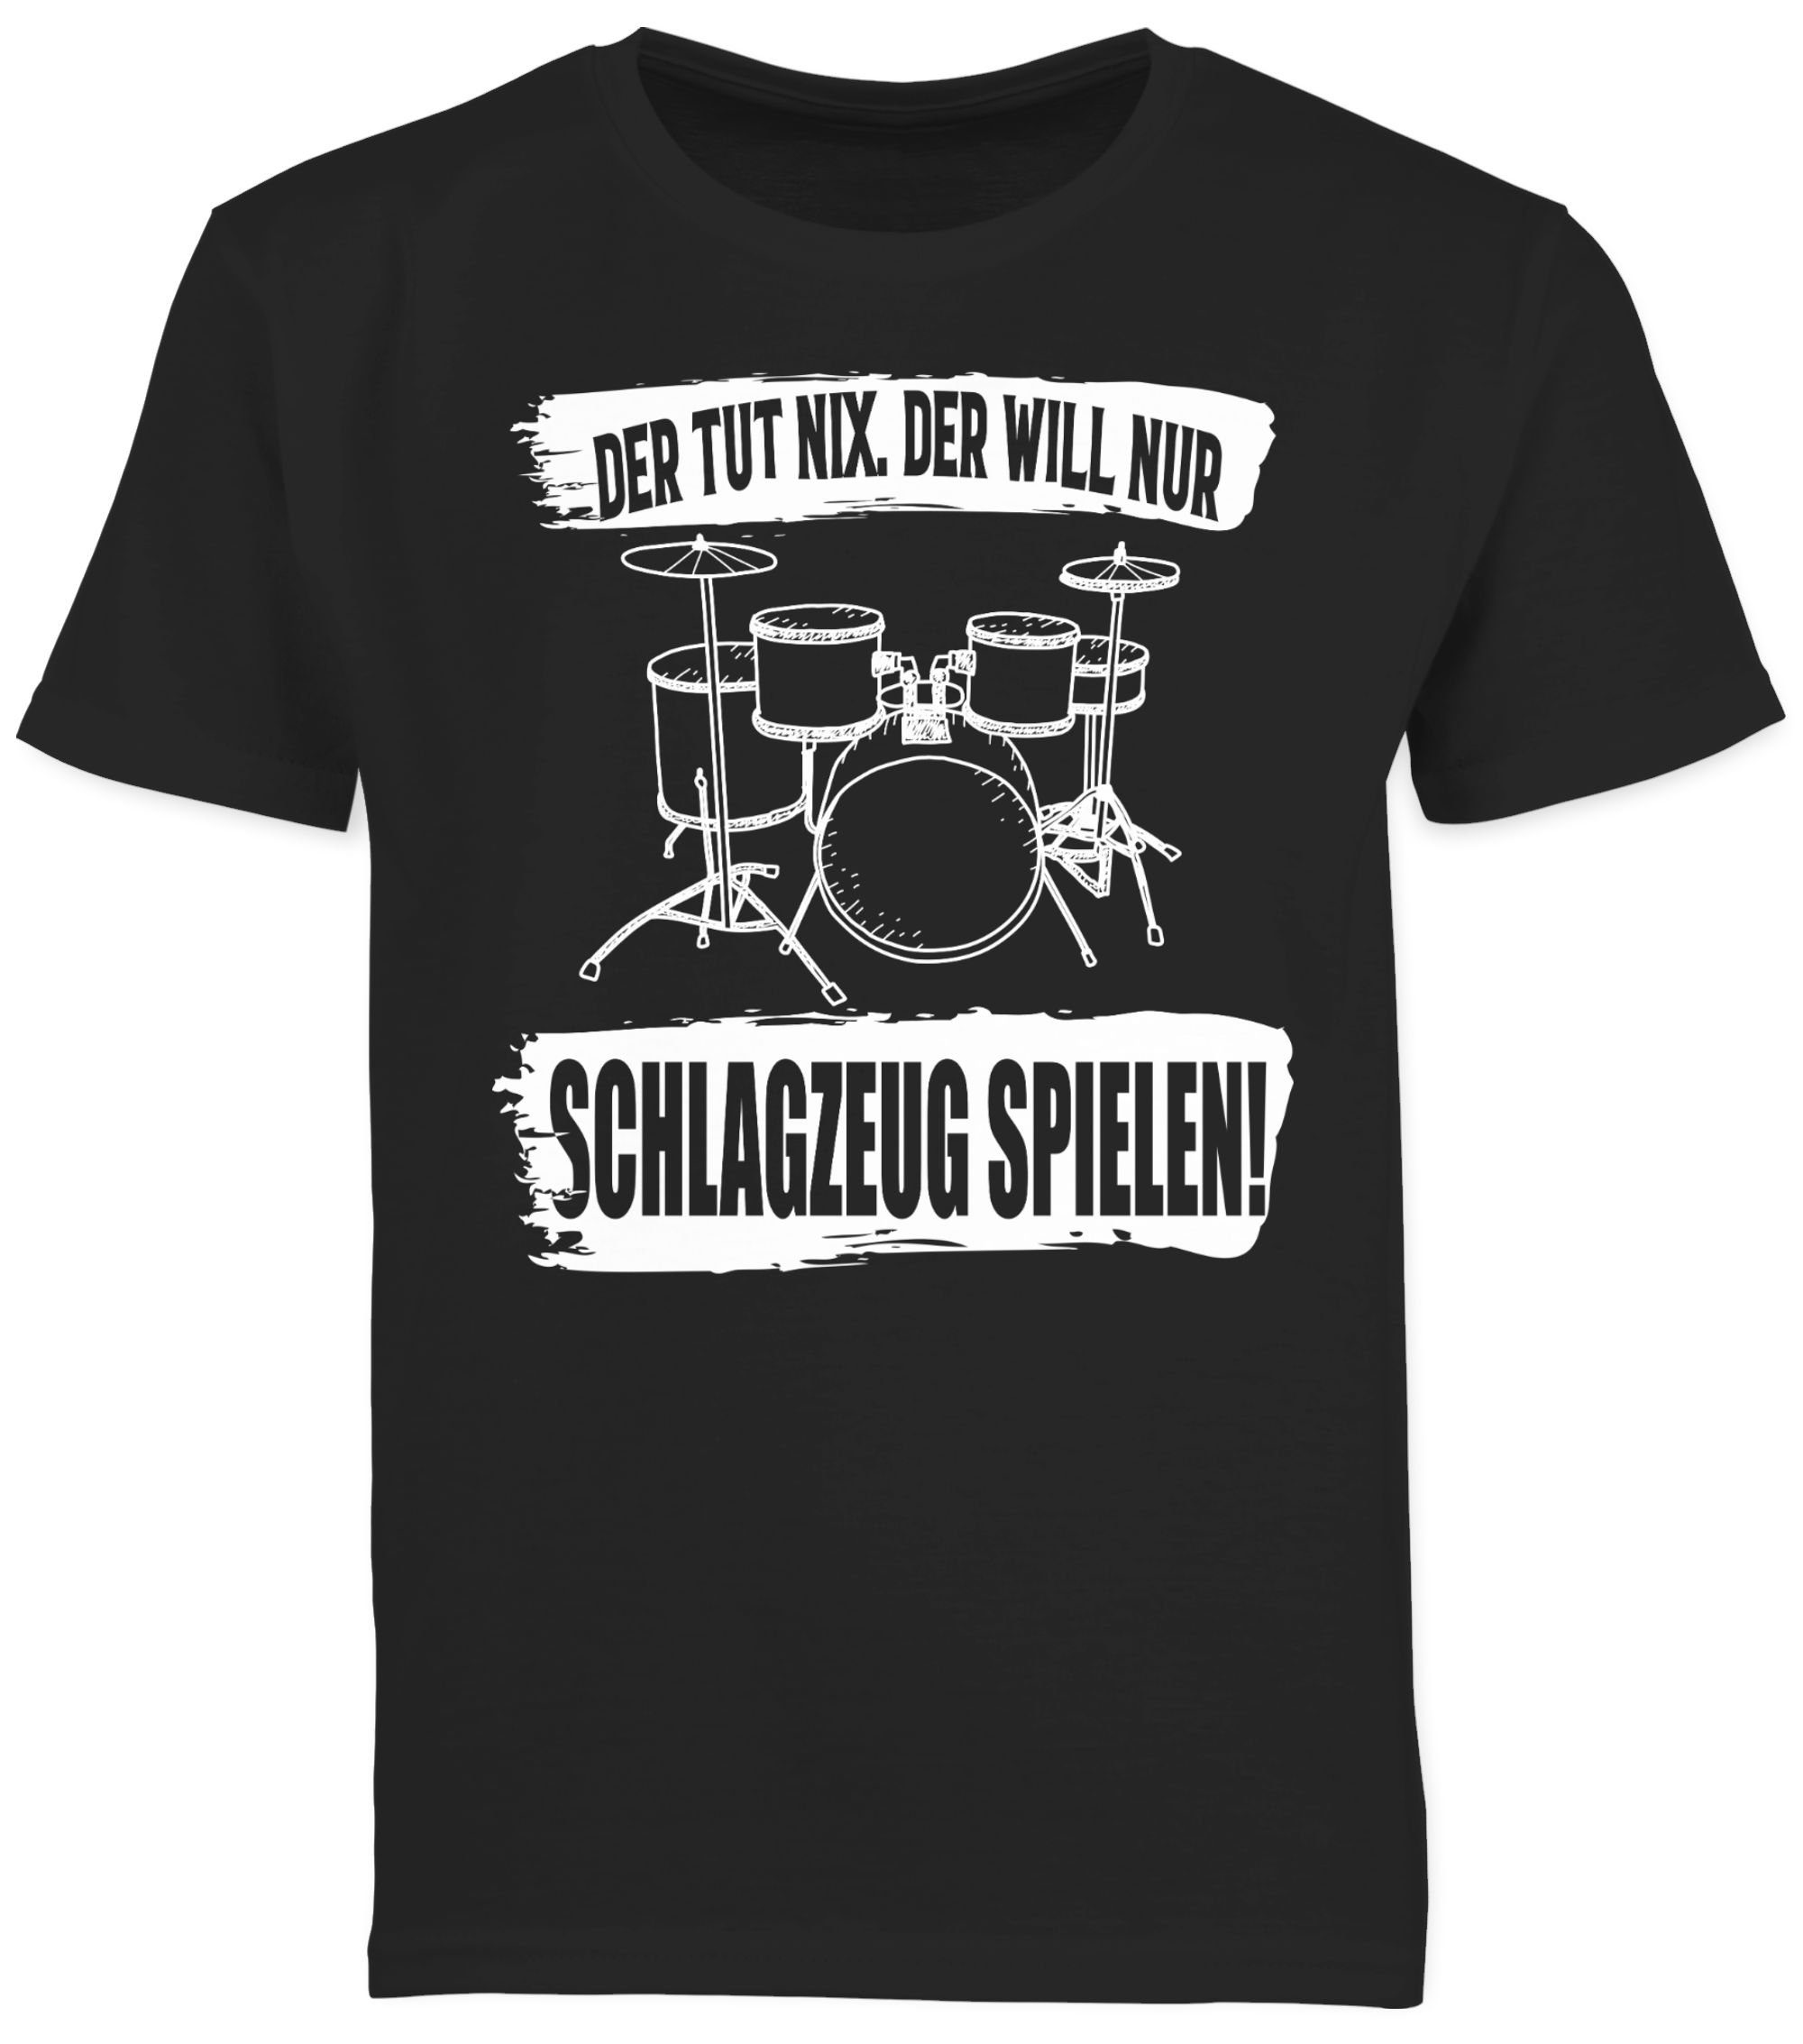 Schwarz 1 Der und Shirtracer will spielen. T-Shirt der Co Kinderkleidung nur tut nix. Schlagzeug